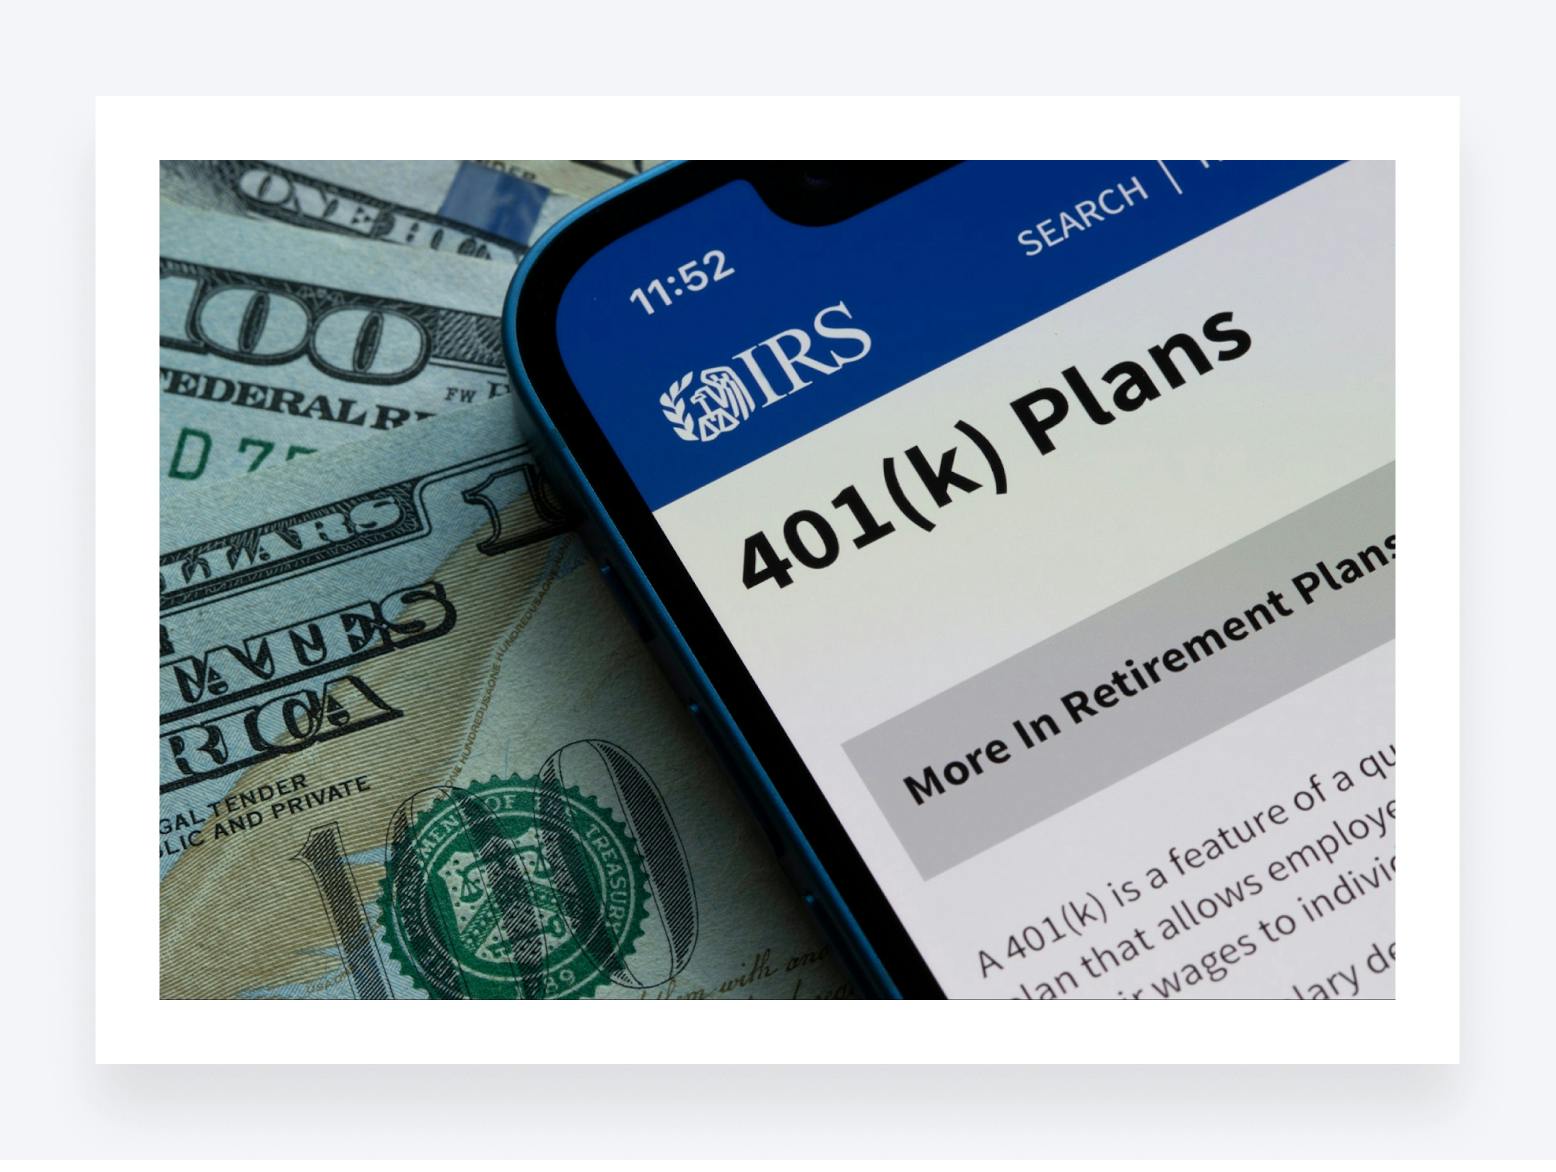 IRS website on mobile detailing 401(k) plans